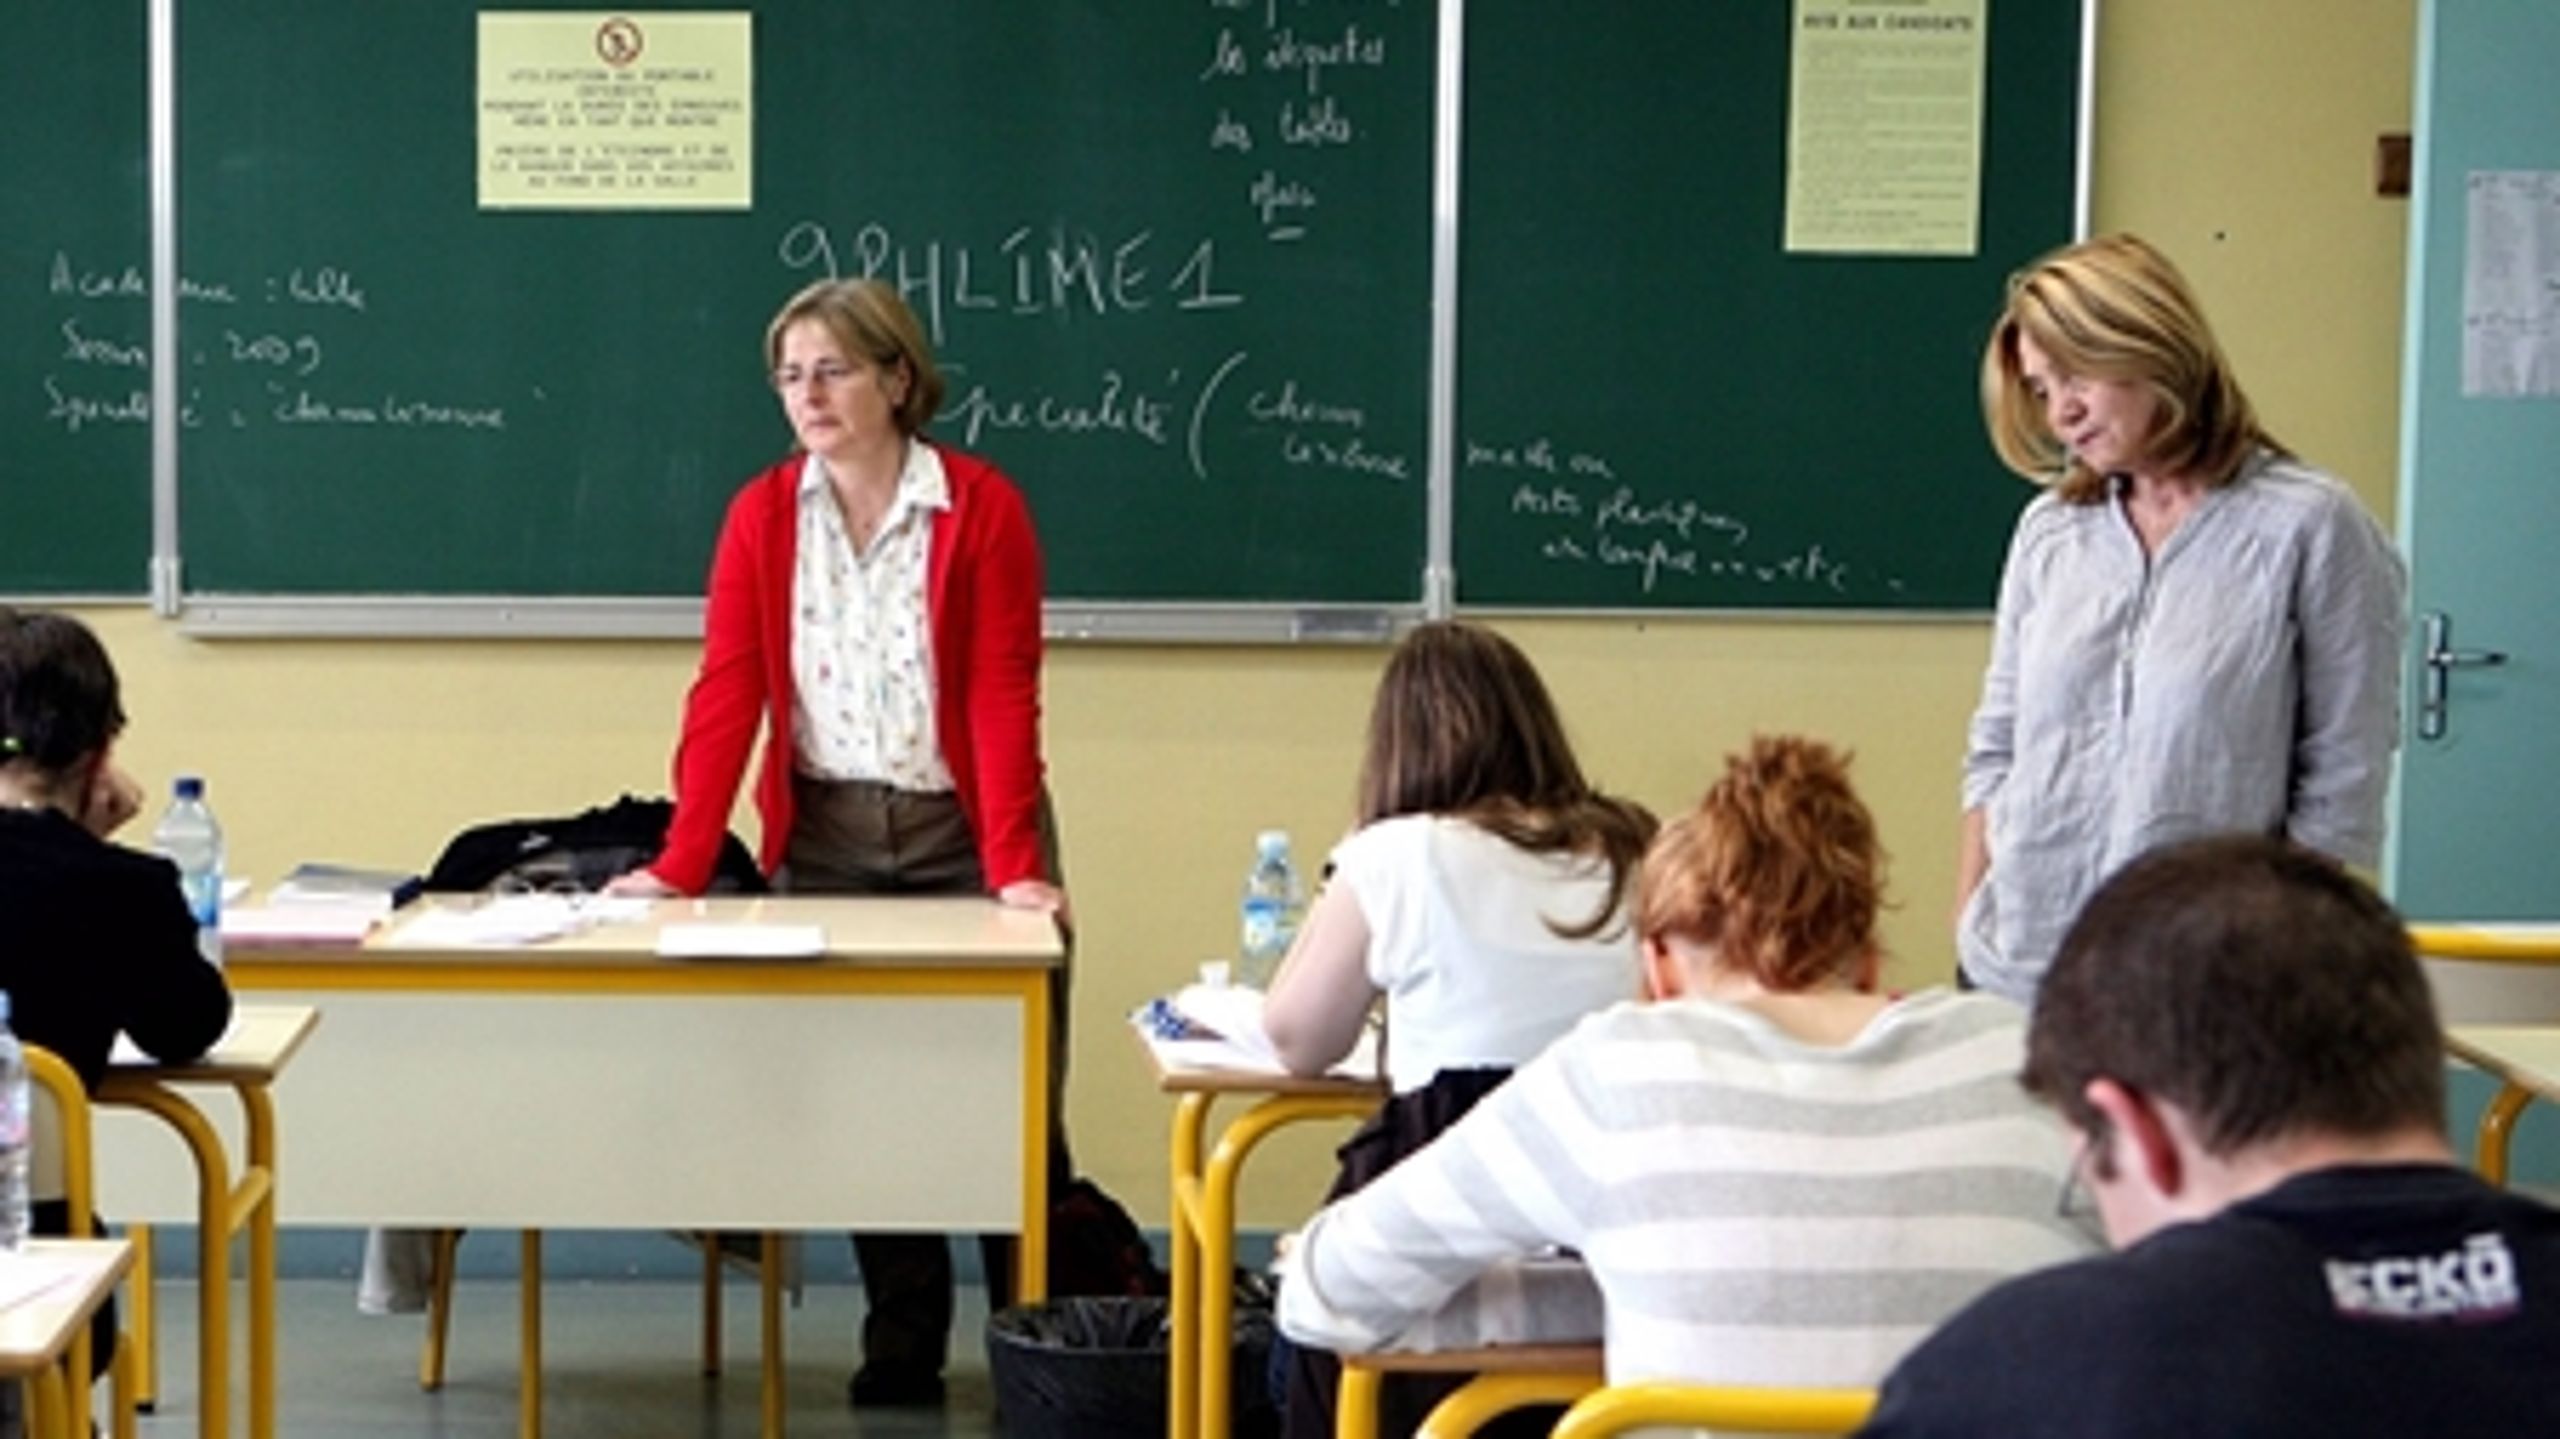 38 procent af danskerne i undersøgelsen svarer, at lockouten af lærerne har forværret deres syn på lærernes arbejdsindsats.